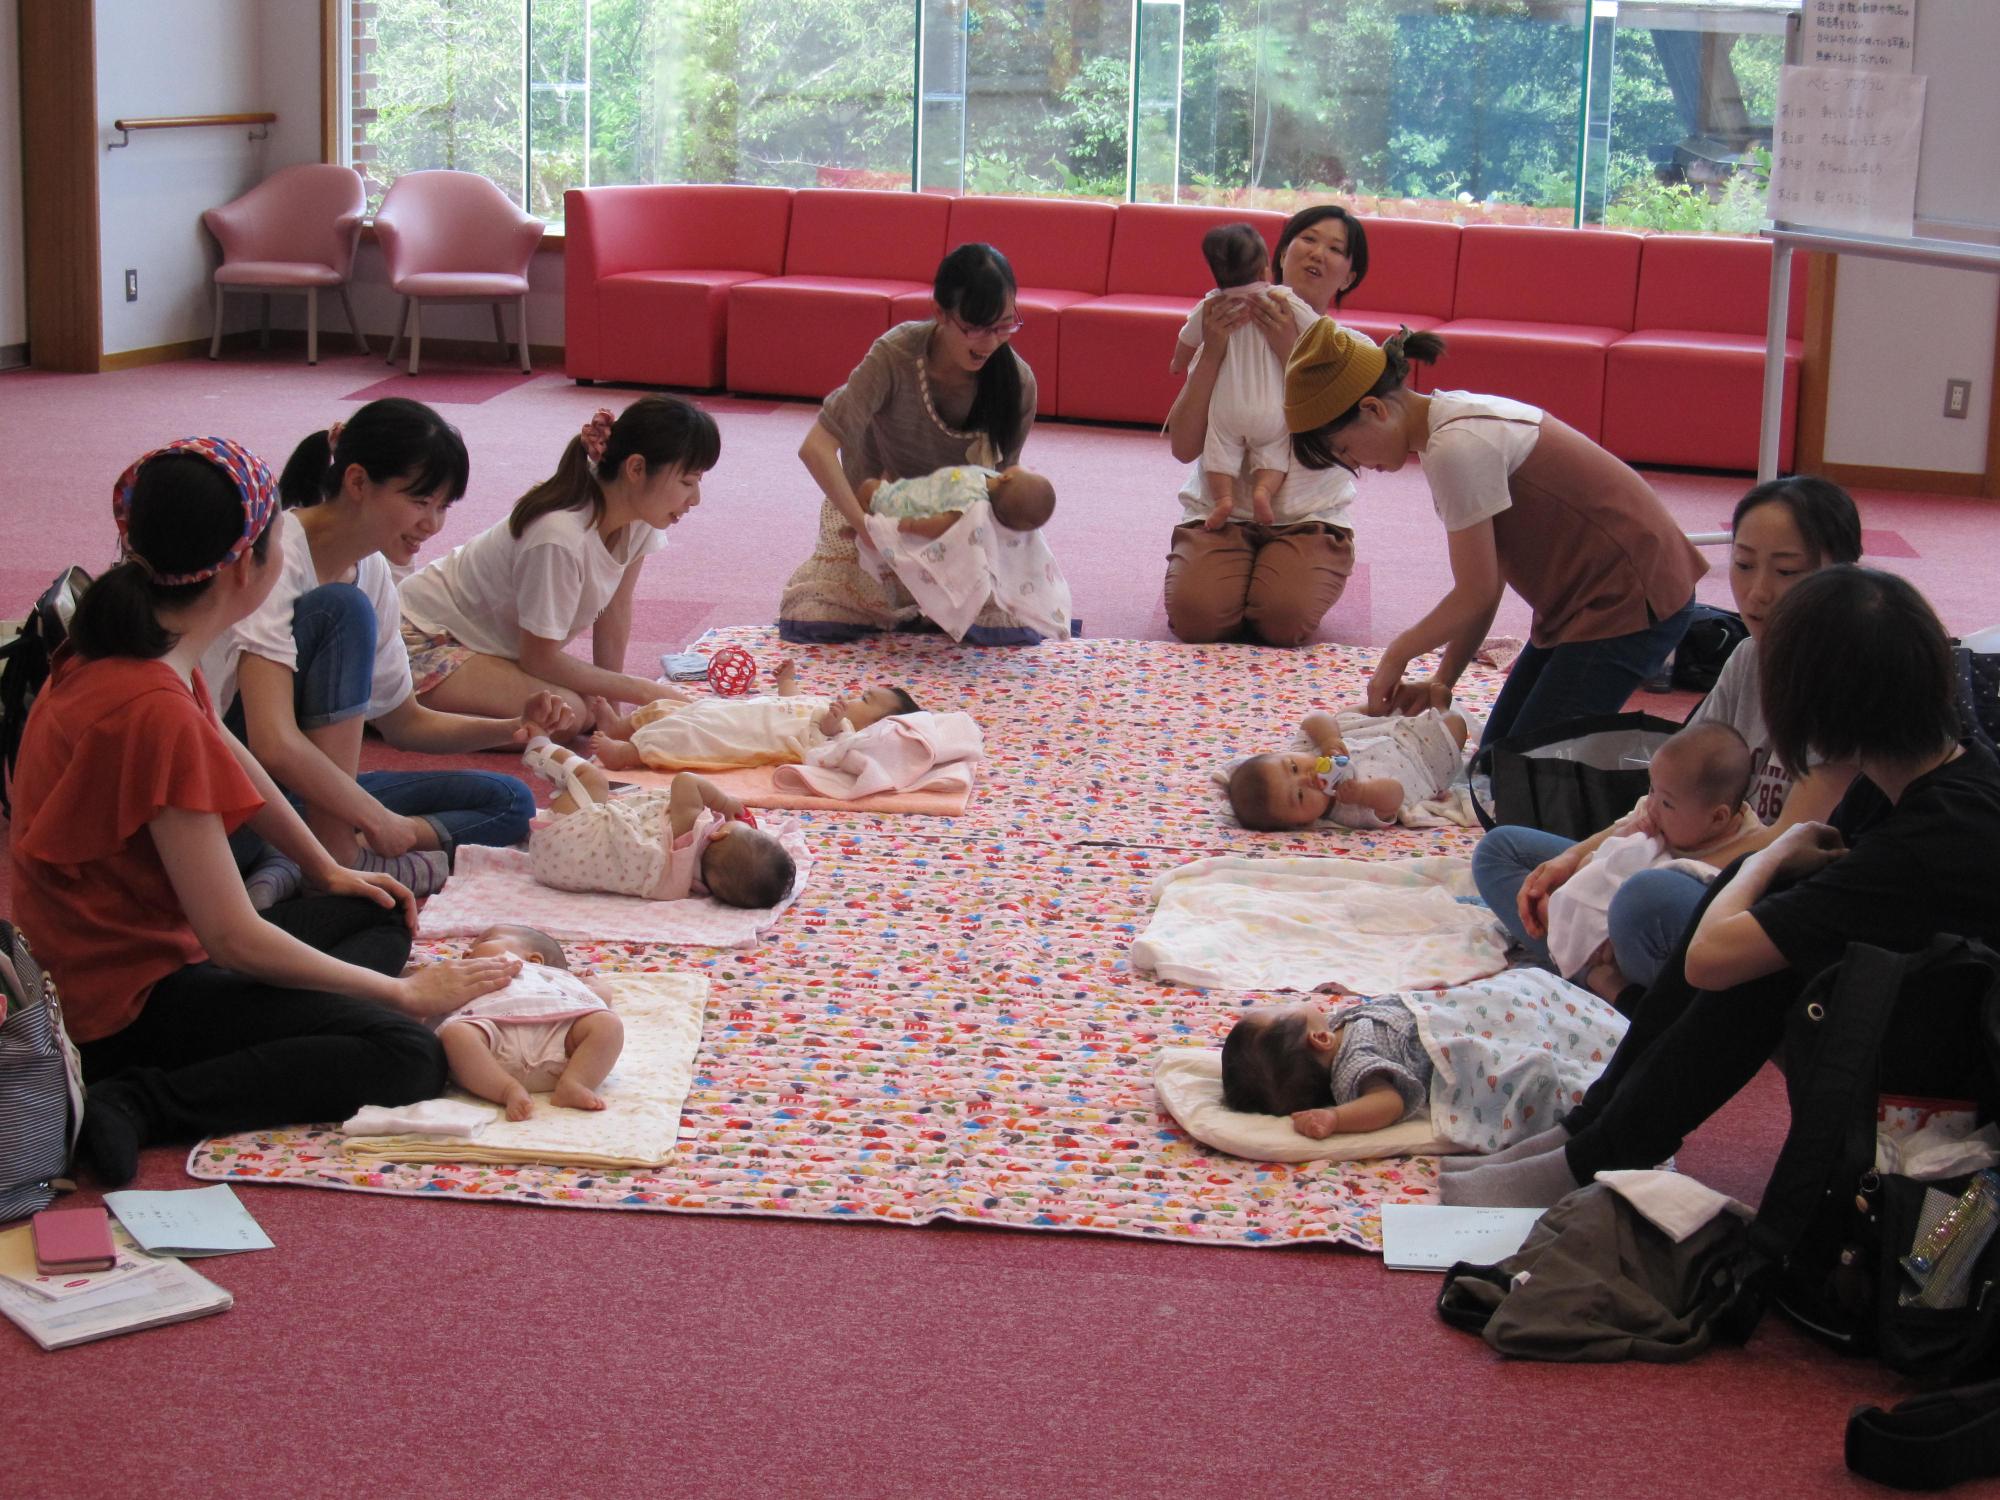 8組の母子が床に敷かれた柔らかい布のマットの上に赤ちゃんを寝かせ、赤ちゃんの様子を見たり母親同士で話し合ったりしている様子の写真